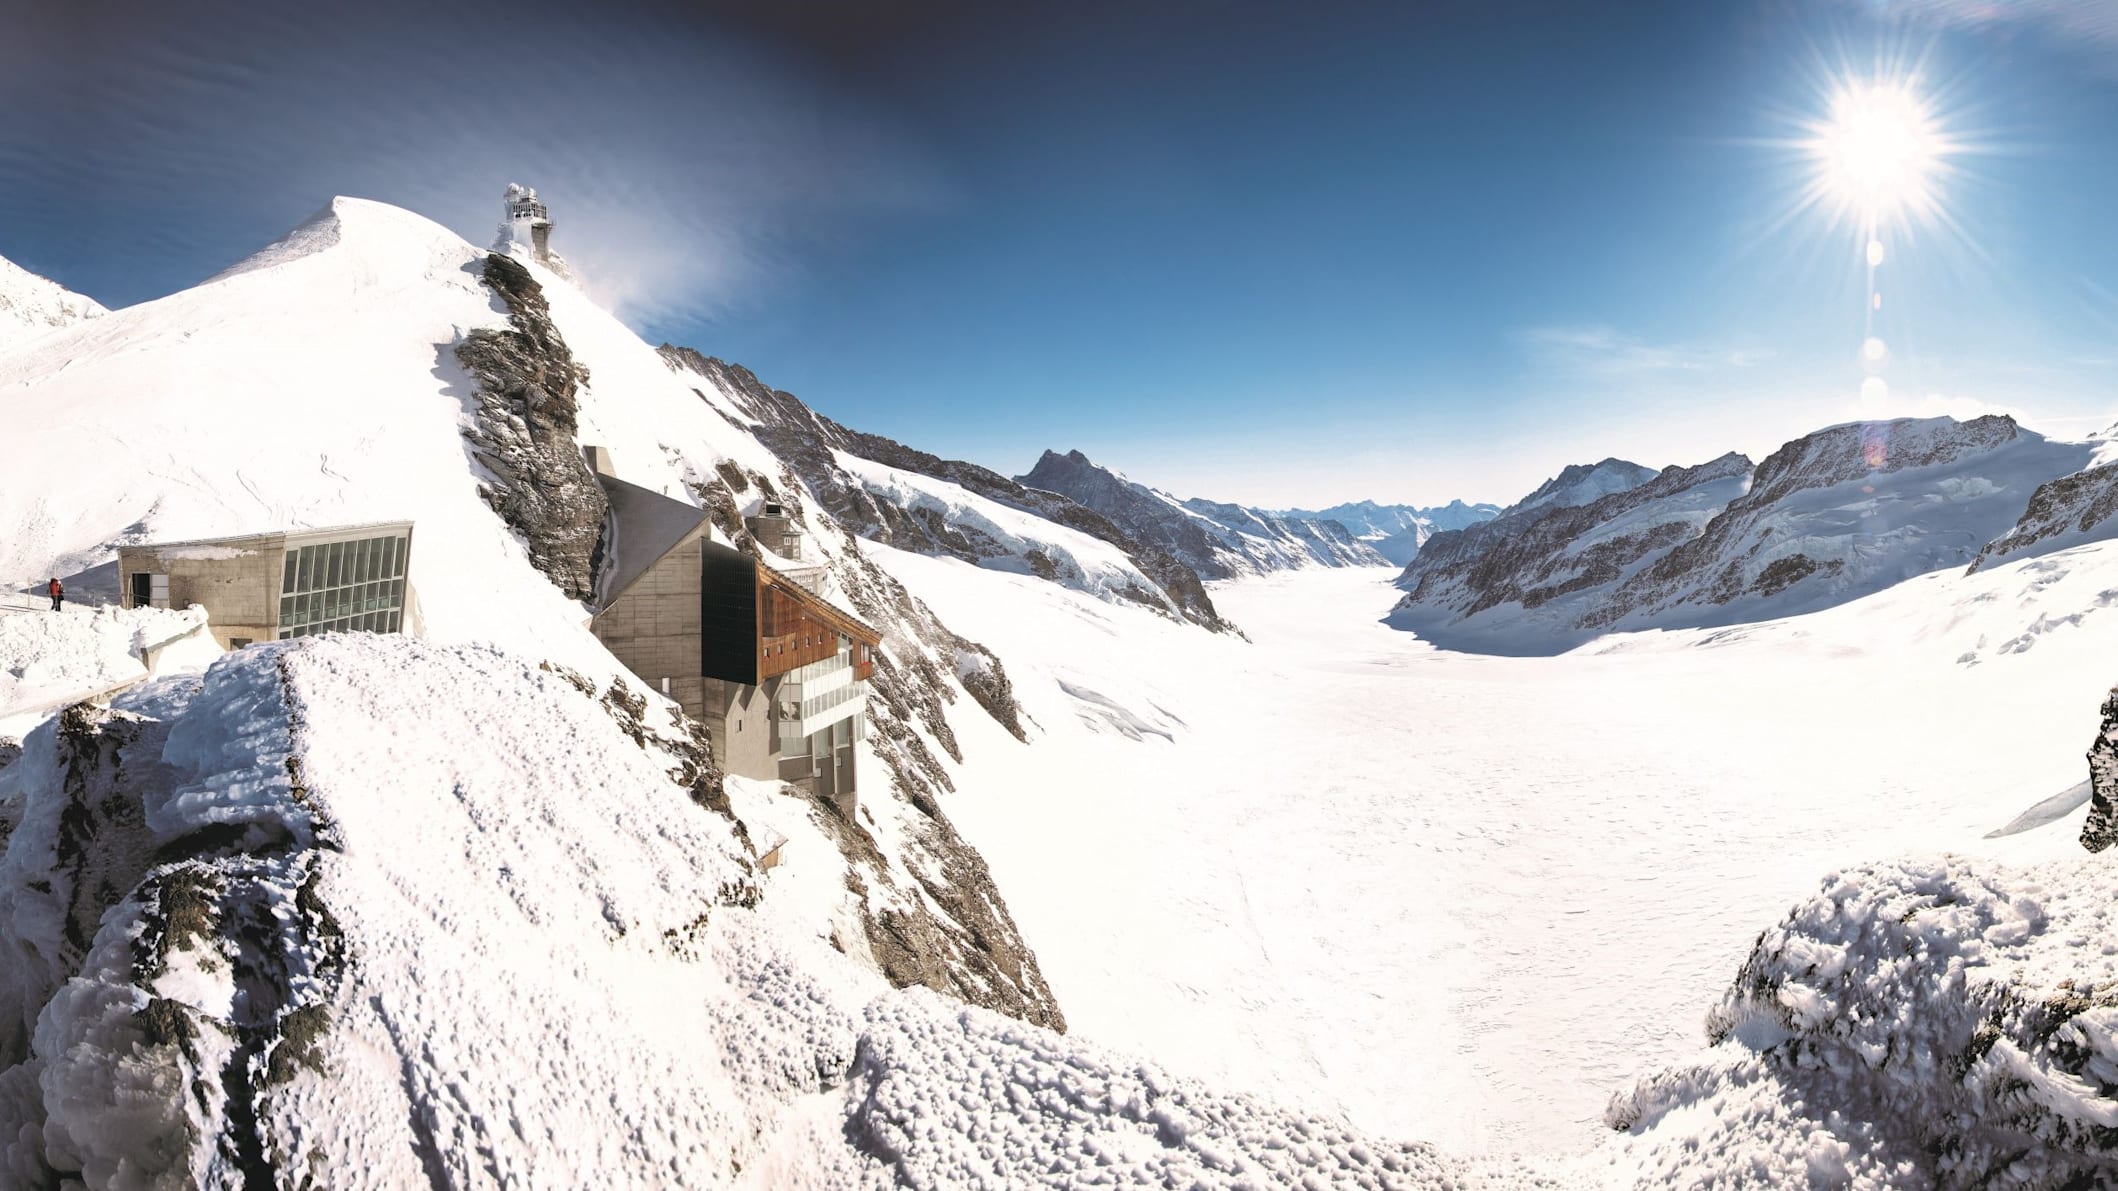 Jungfraujoch Aletschgletscher kl 2 